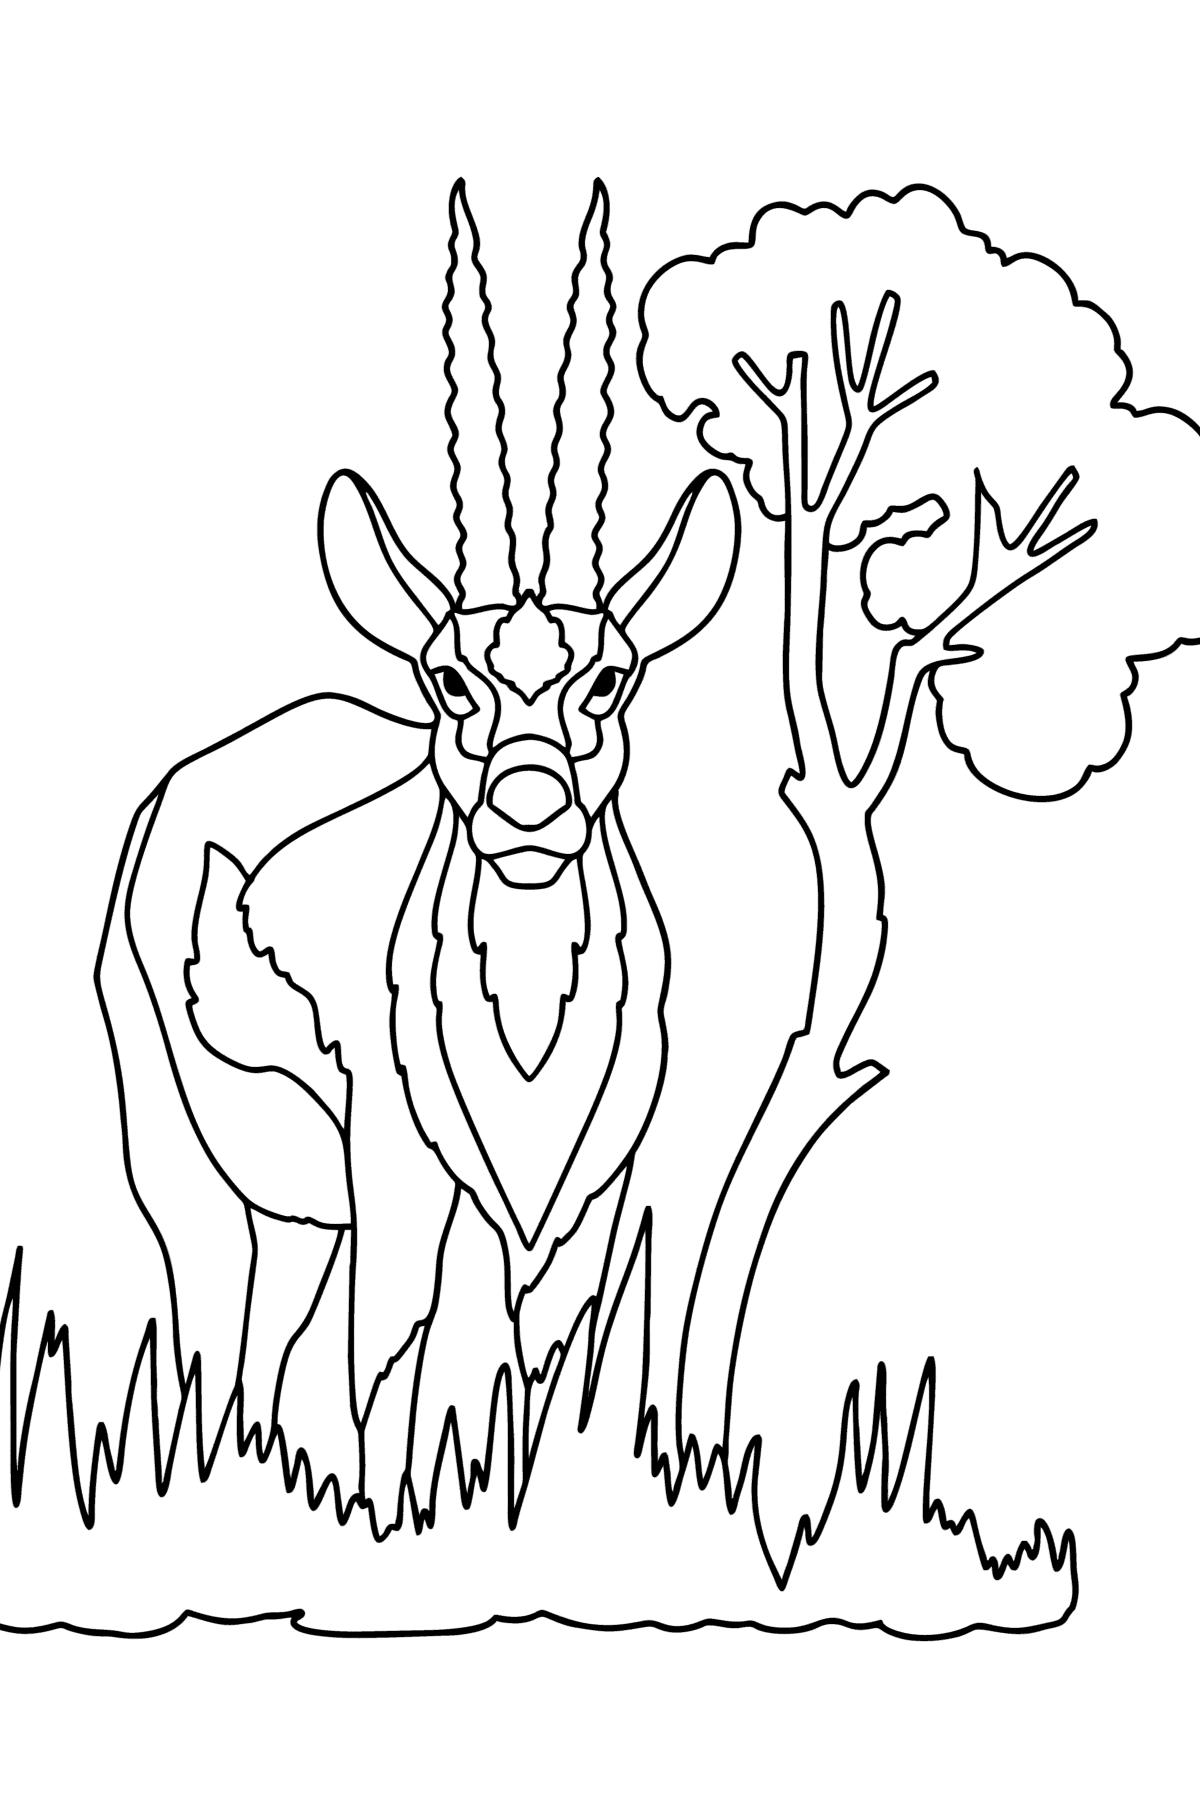 Tegning til farvning Thompsons gazelle - Tegninger til farvelægning for børn